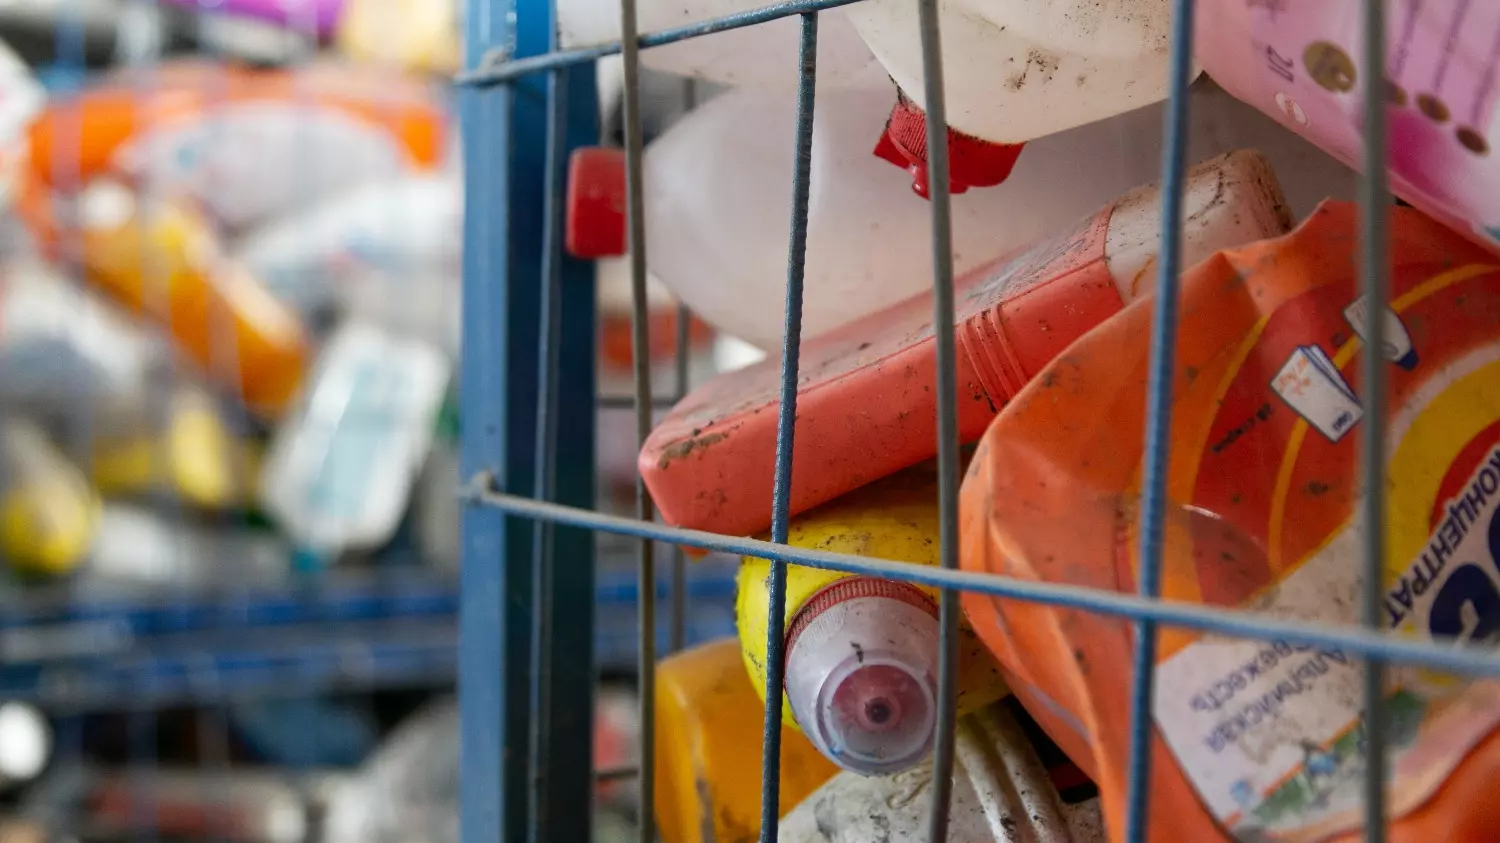 Гражданам предлагают заработать на сборе пластика, сдавая его в специальные пункты